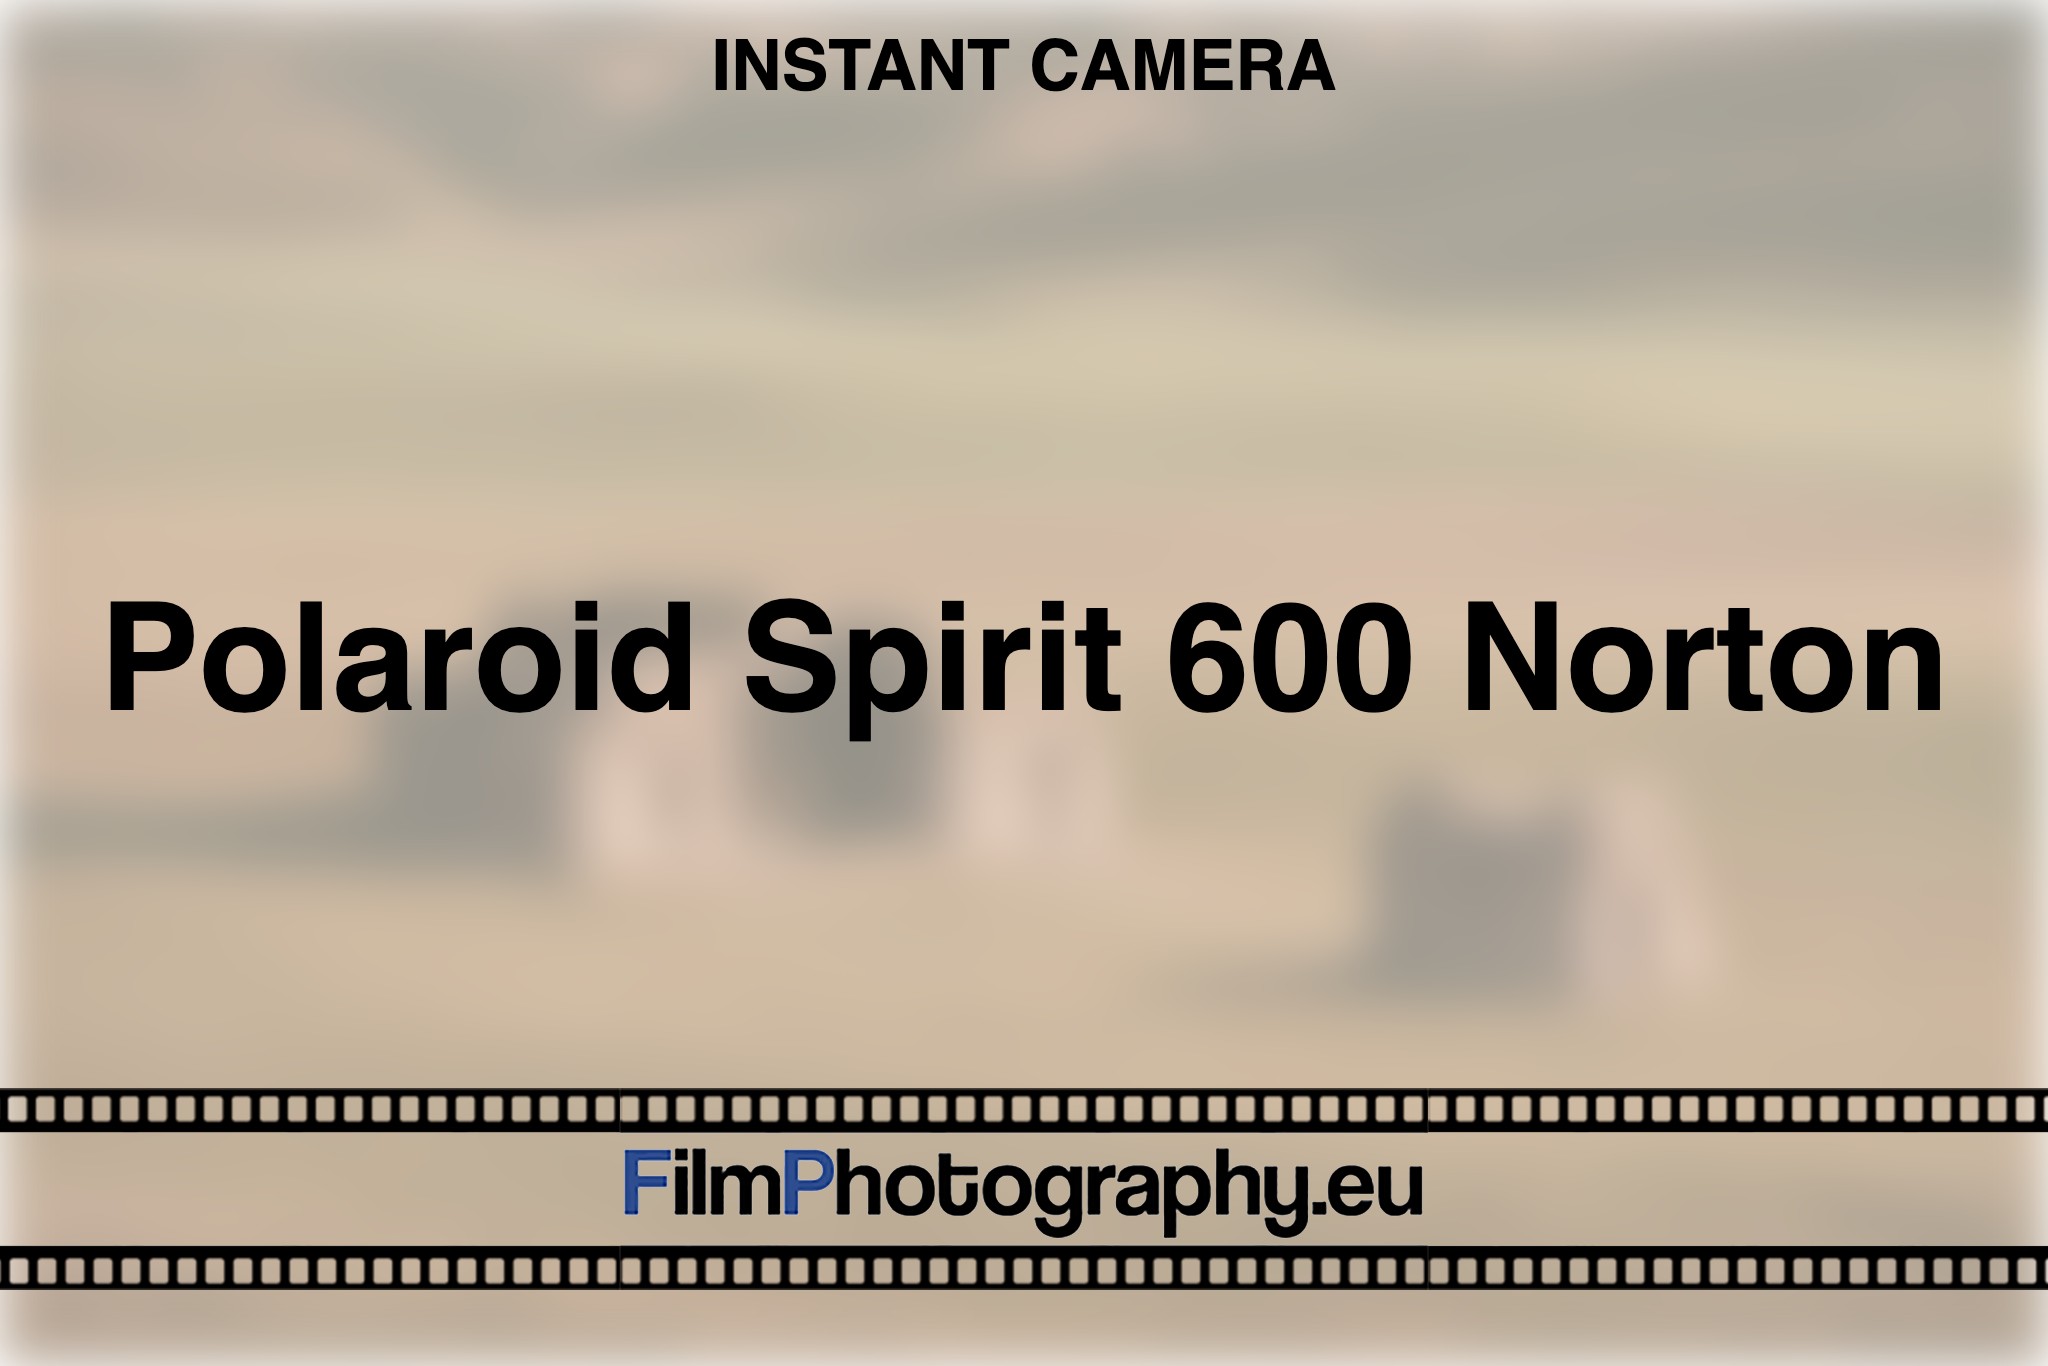 polaroid-spirit-600-norton-instant-camera-bnv